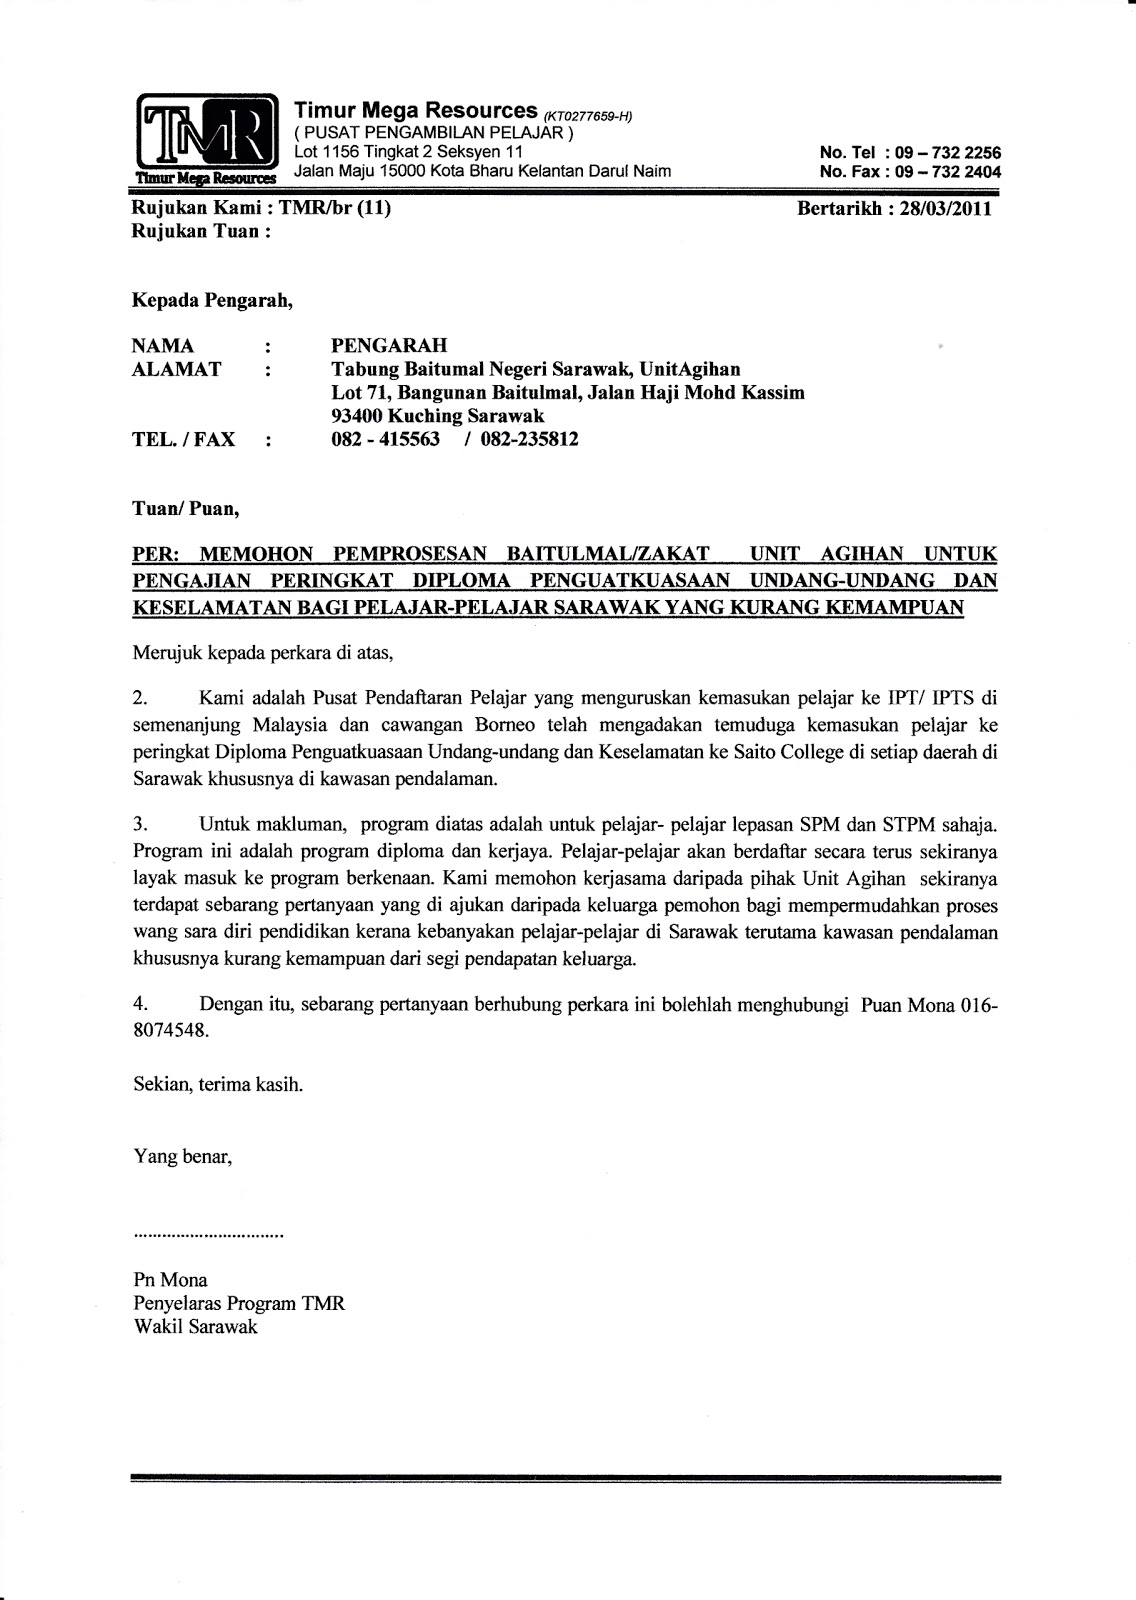 Contoh Surat Perjanjian Kerja Ubahsuai Rumah Malaysia